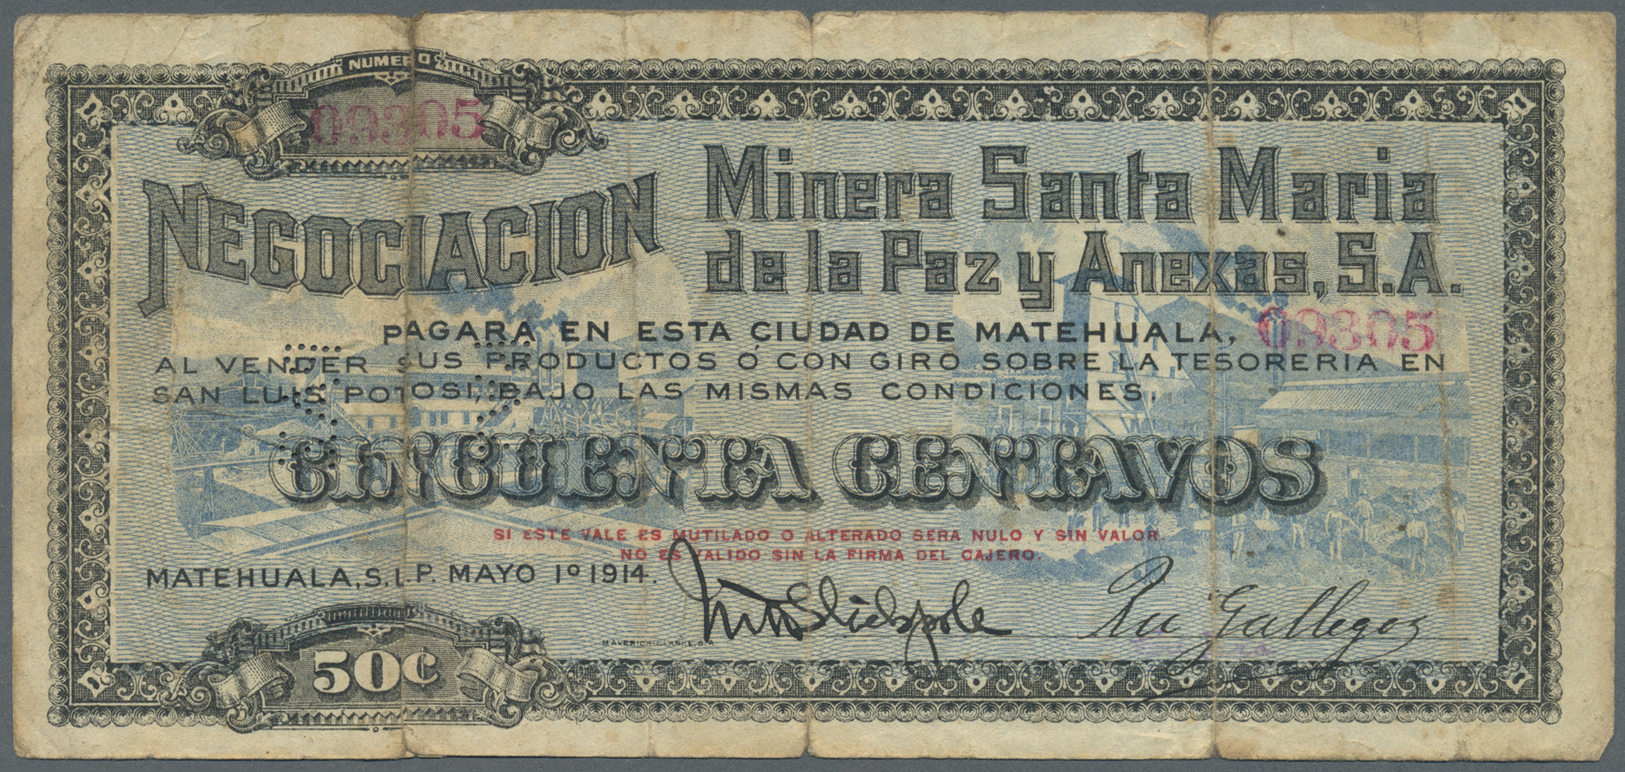 01723 Mexico: Negociacion Minera Santa Maria De La Paz Y Anexas S.A. 50 Centavos 1914 P. NL, Used With Several Folds, Pe - Mexico